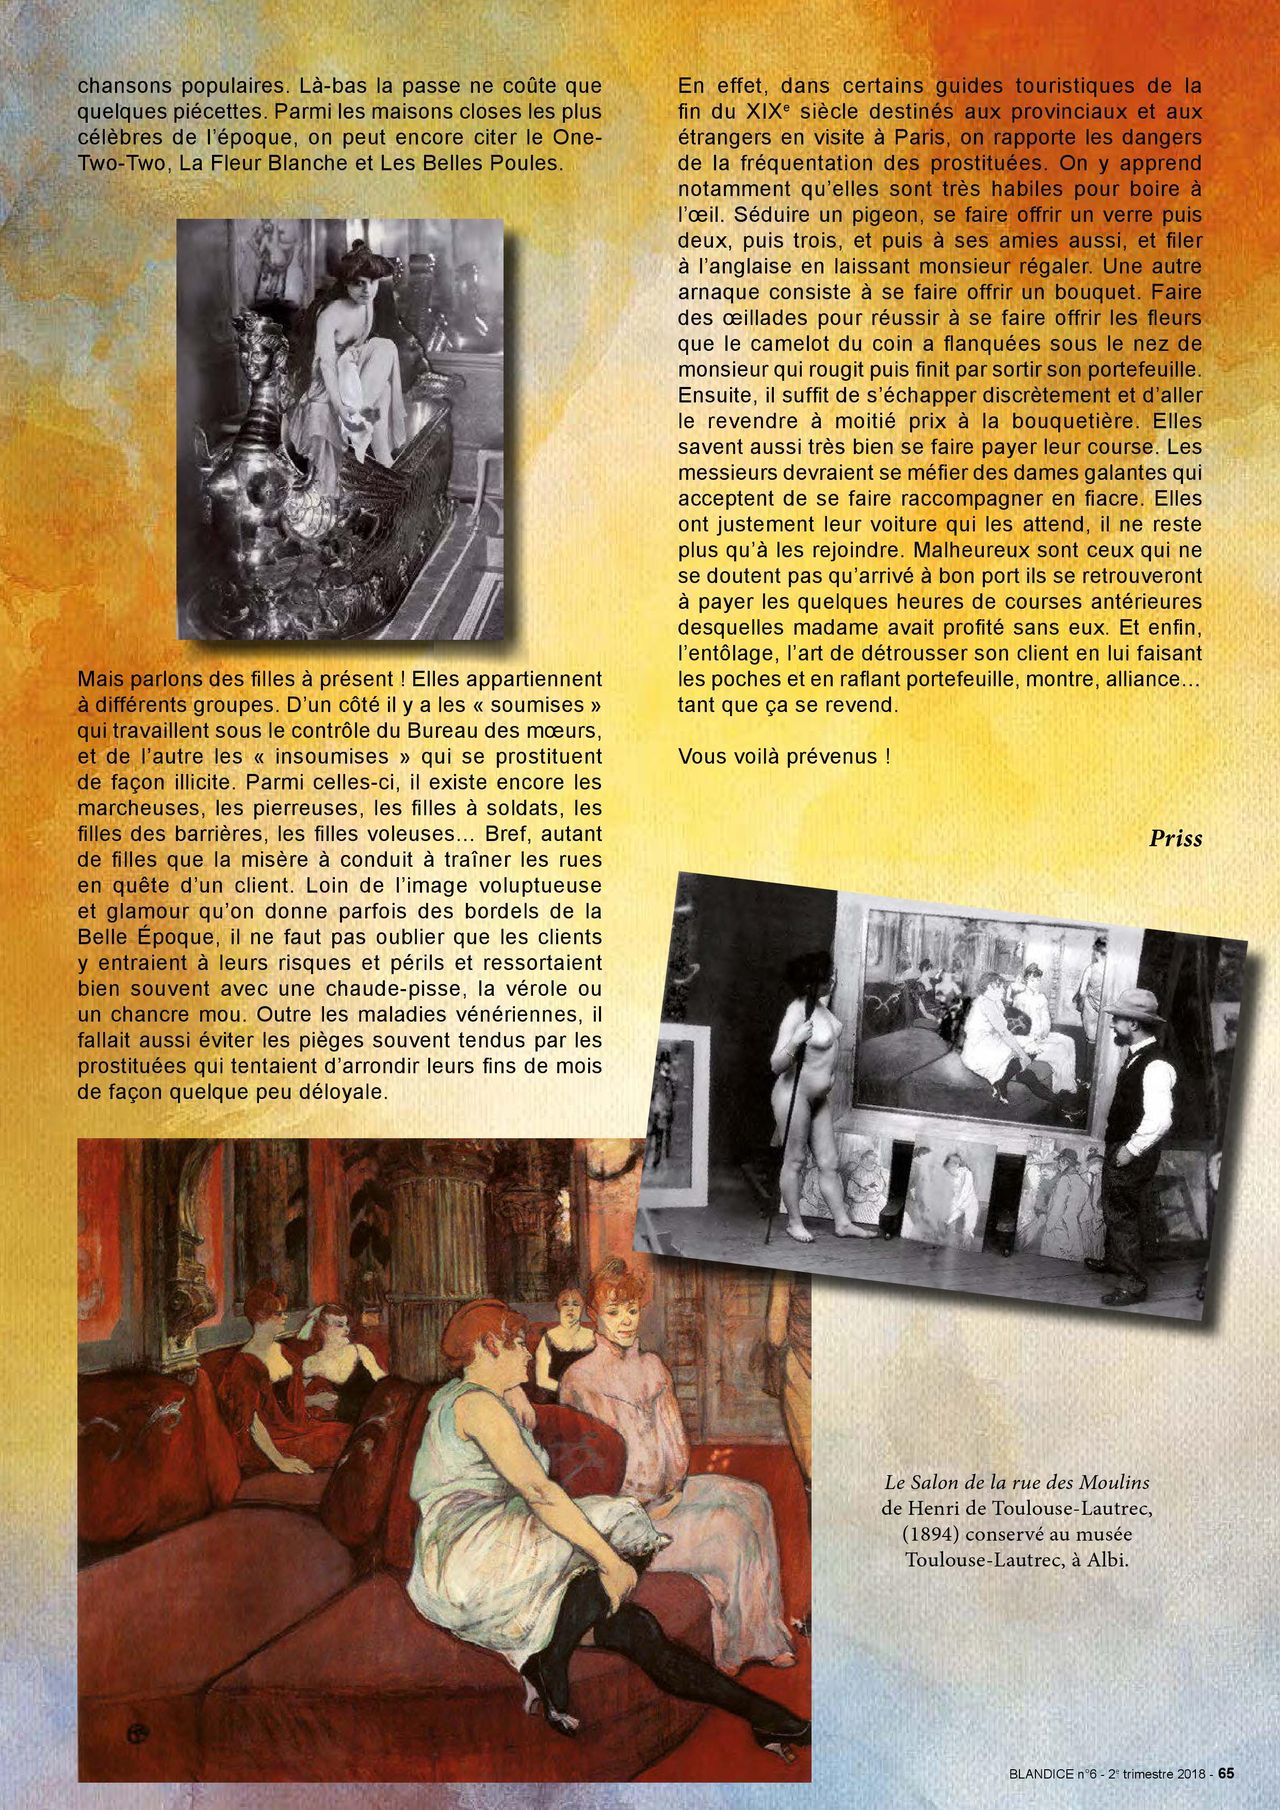 Blandice - 06 - Limpressionnisme dans la bd numero d'image 66